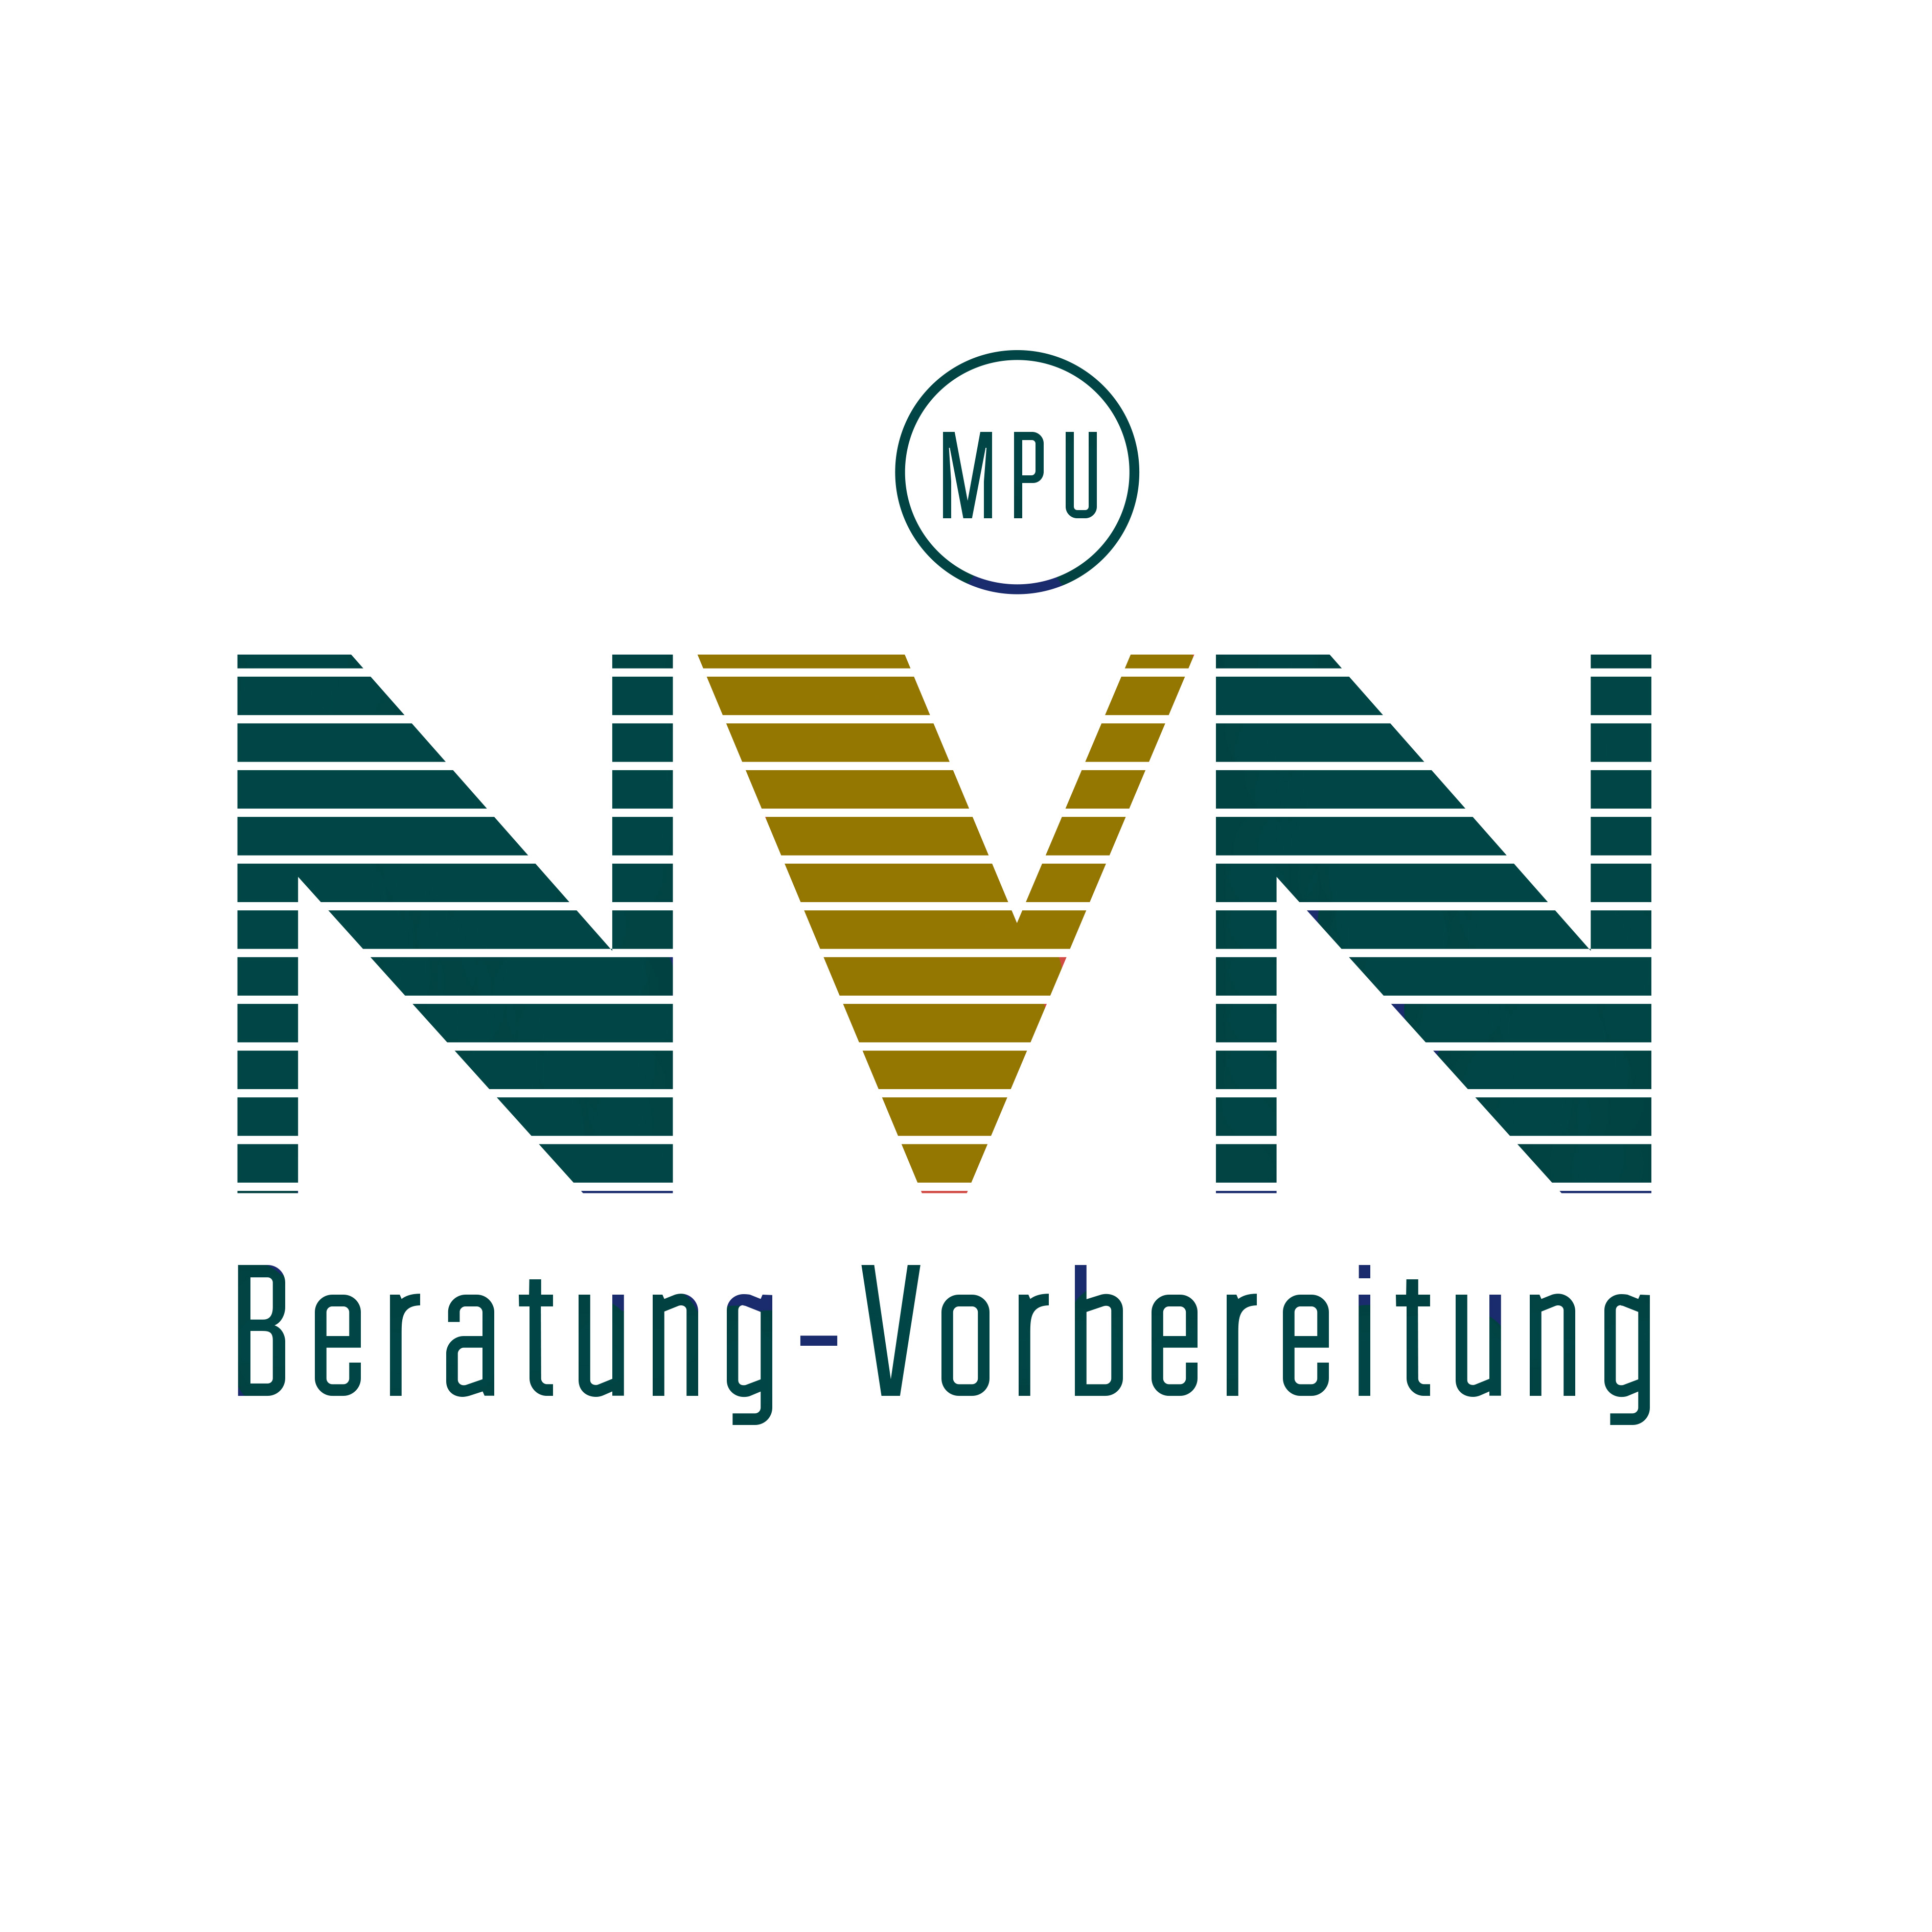 NVN MPU-Beratung in Düsseldorf